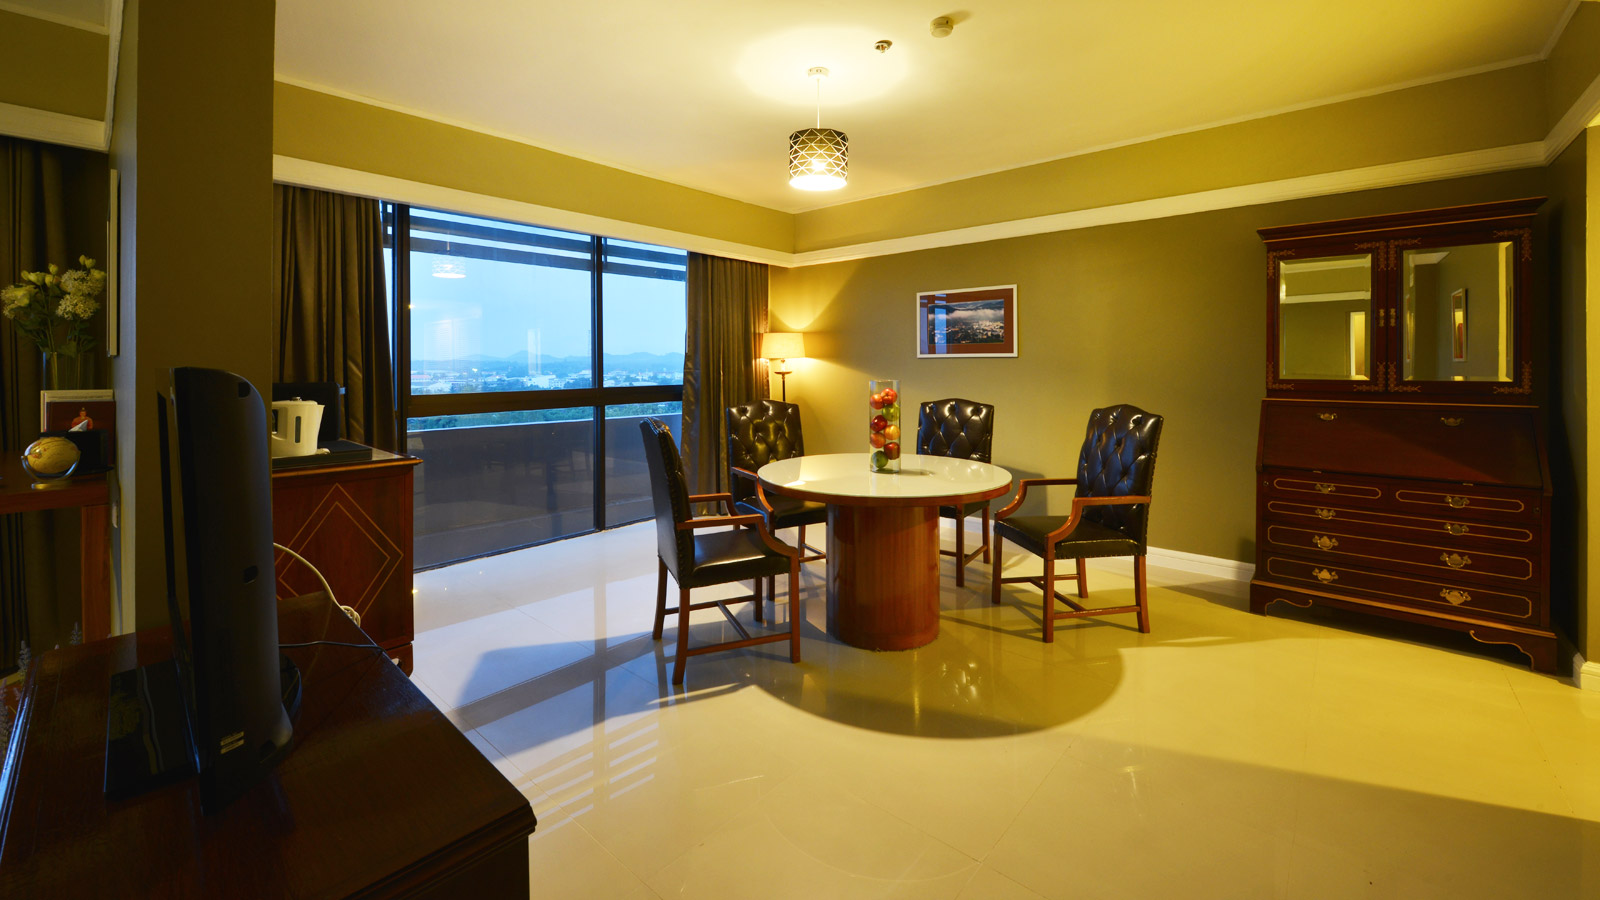 Hilton West Palm Beach — Artco Hospitality Furnishings